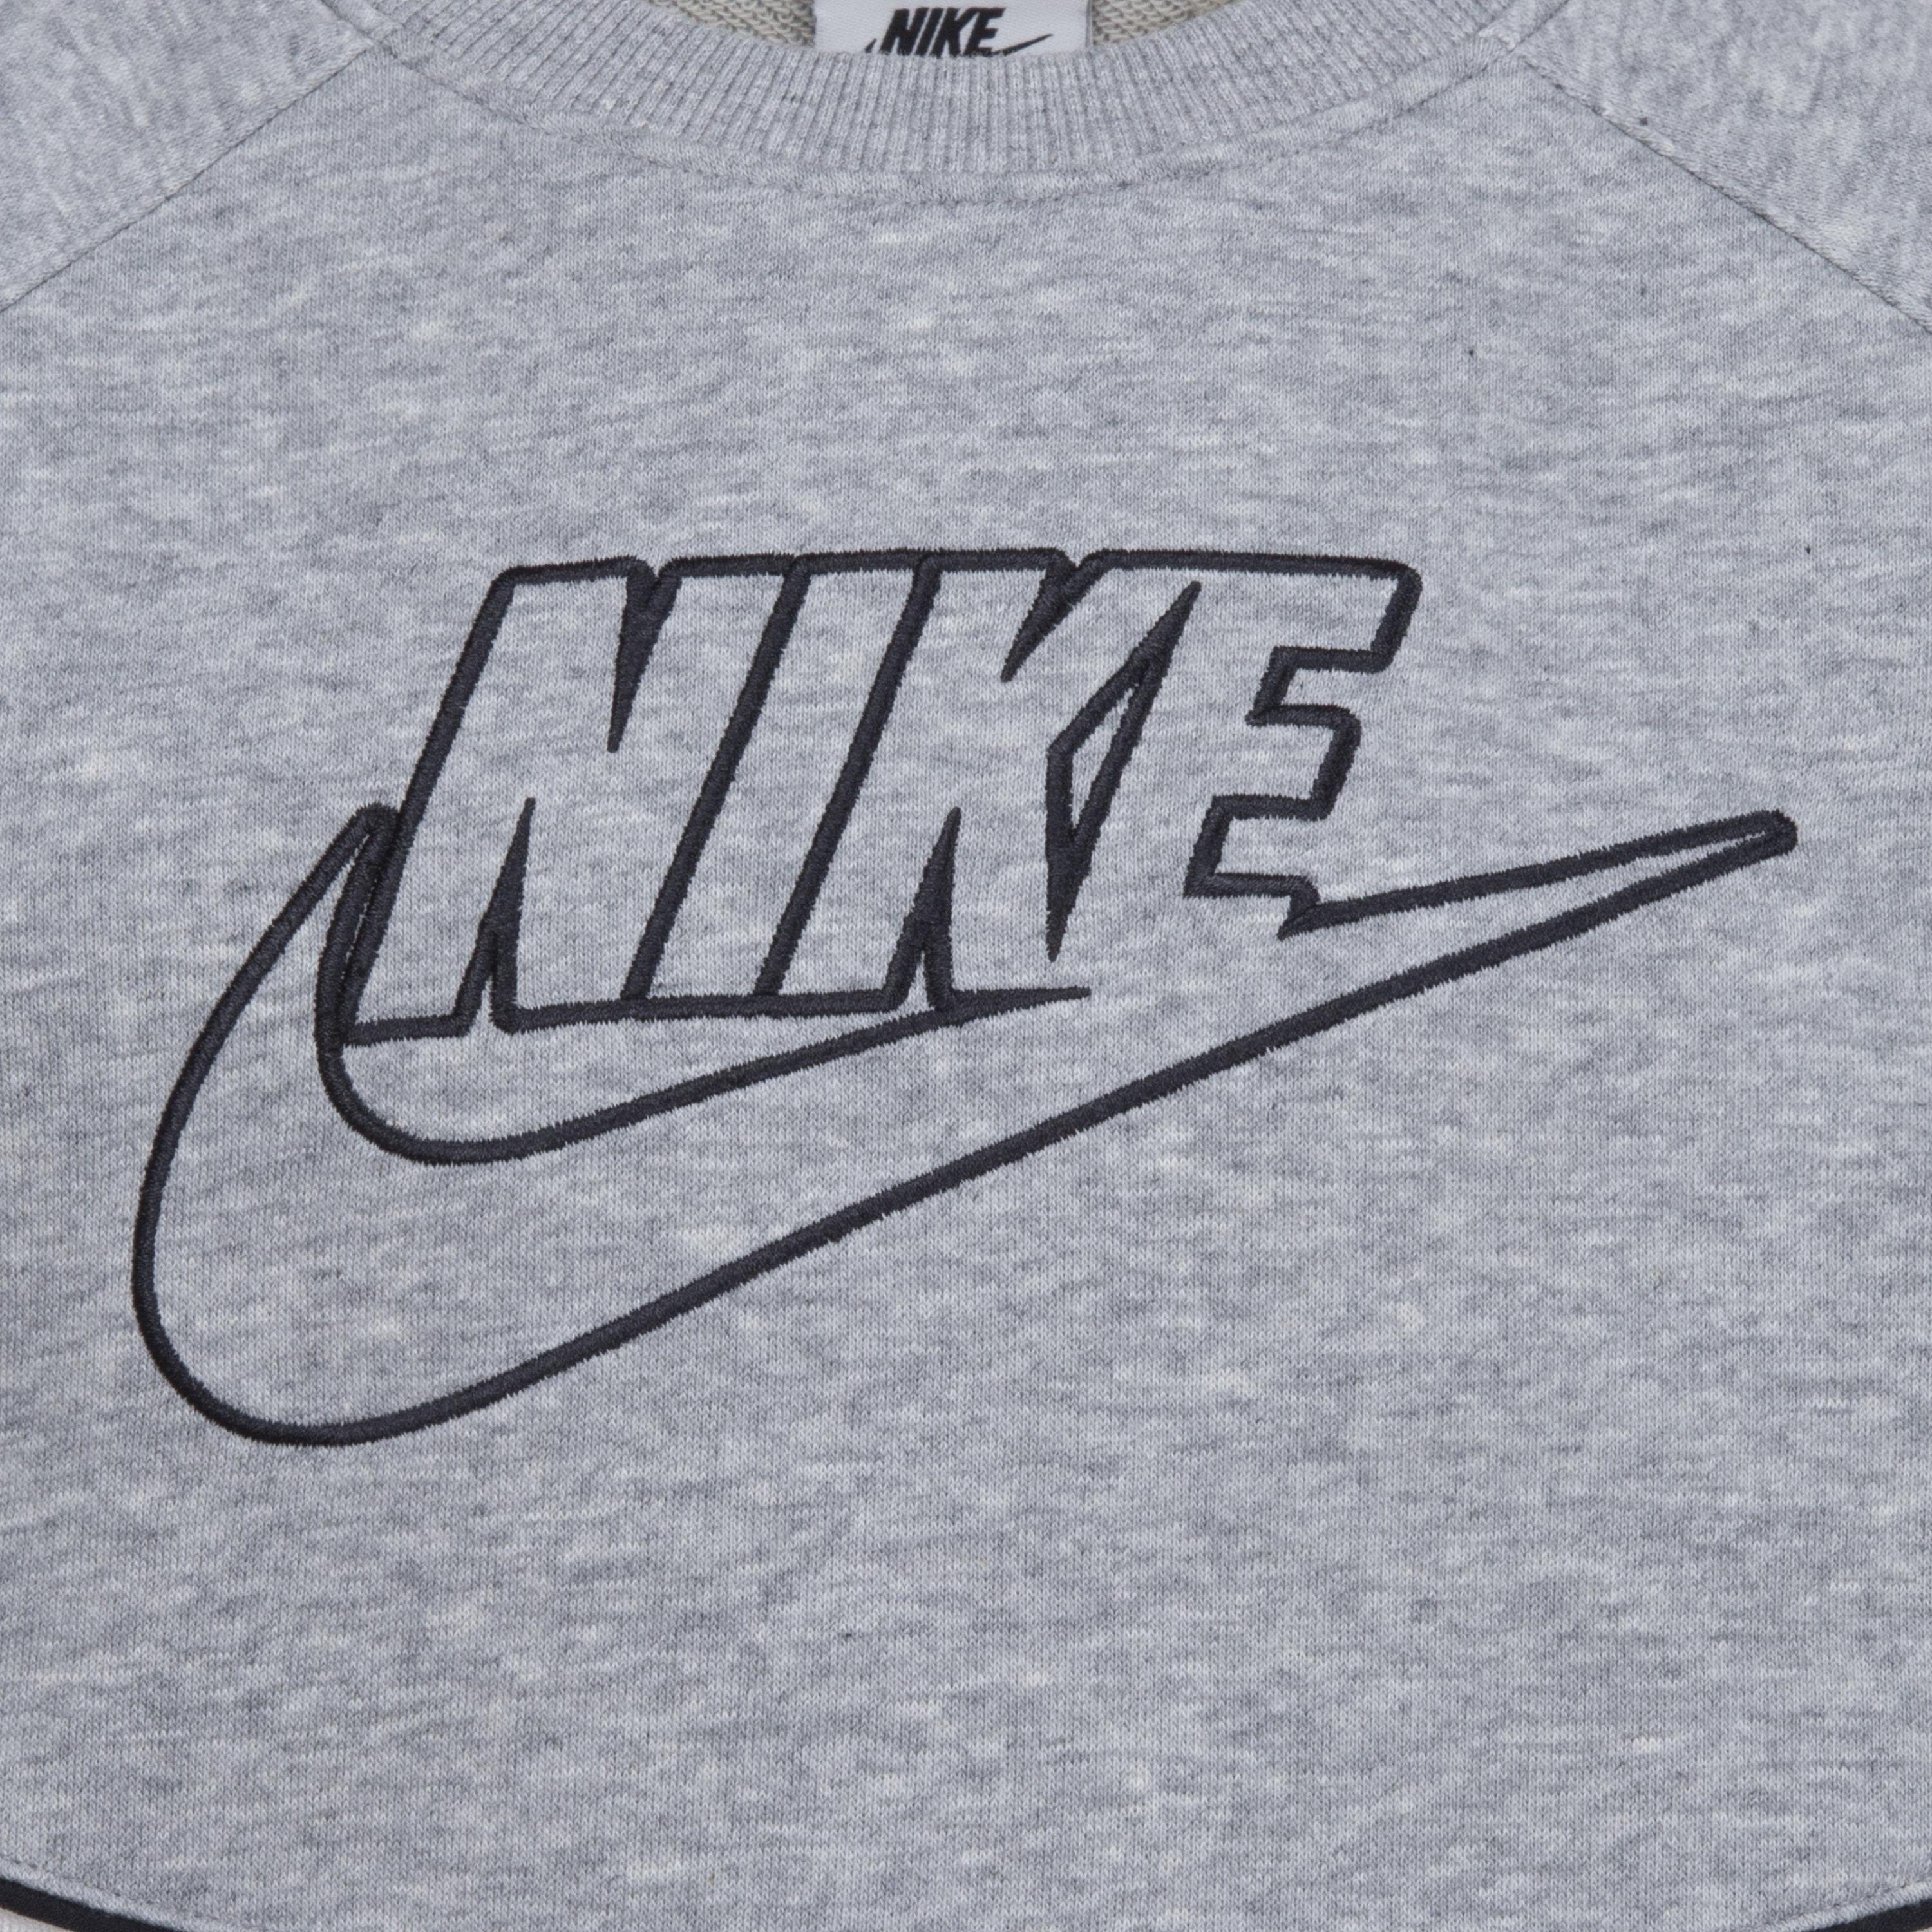 Jogginganzug grey Nike (Set, Sportswear 2-tlg)